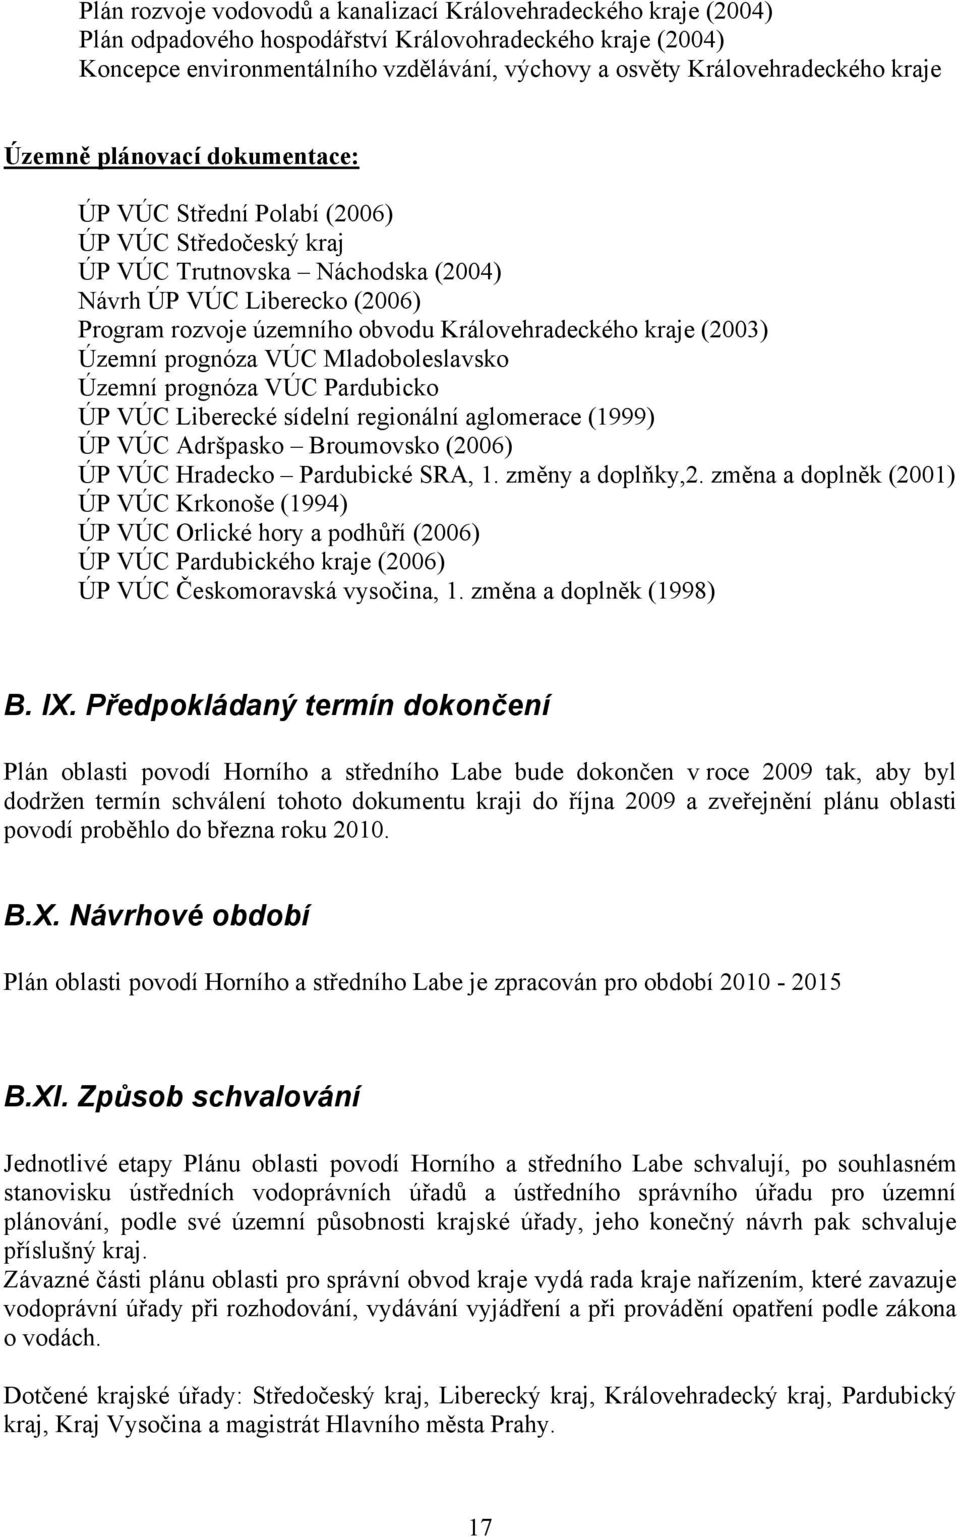 Královehradeckého kraje (2003) Územní prognóza VÚC Mladoboleslavsko Územní prognóza VÚC Pardubicko ÚP VÚC Liberecké sídelní regionální aglomerace (1999) ÚP VÚC Adršpasko Broumovsko (2006) ÚP VÚC